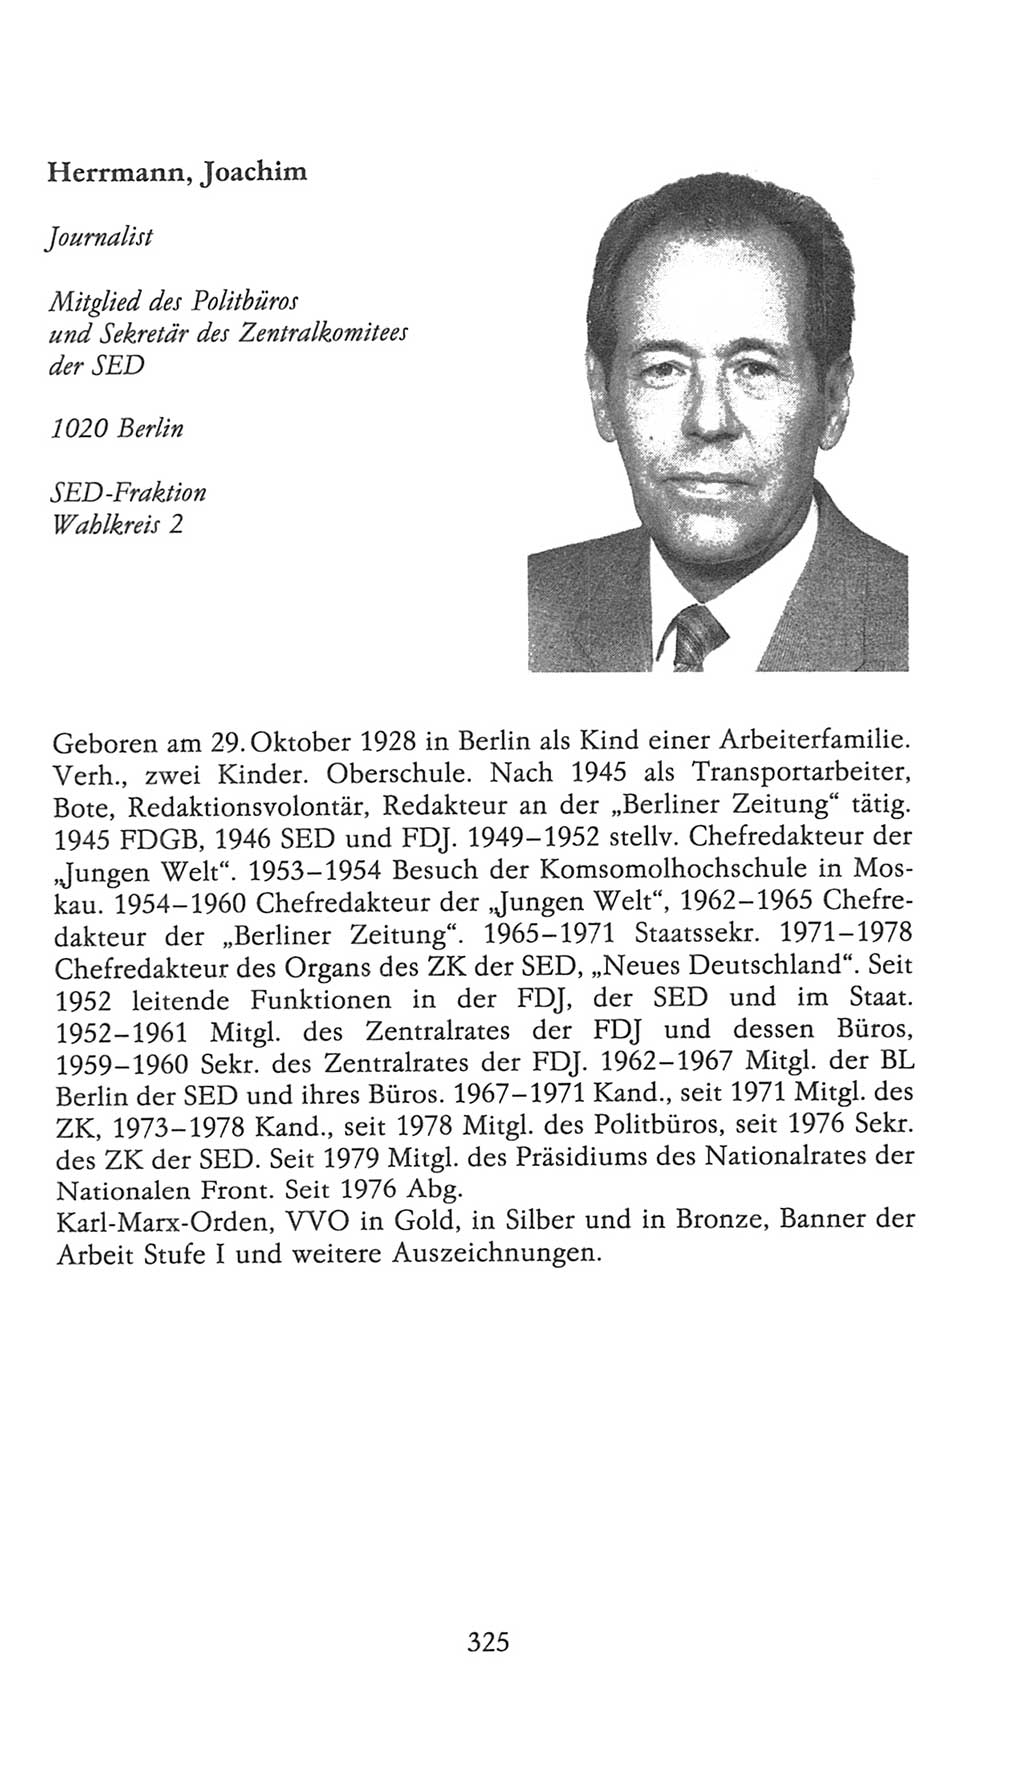 Volkskammer (VK) der Deutschen Demokratischen Republik (DDR), 9. Wahlperiode 1986-1990, Seite 325 (VK. DDR 9. WP. 1986-1990, S. 325)